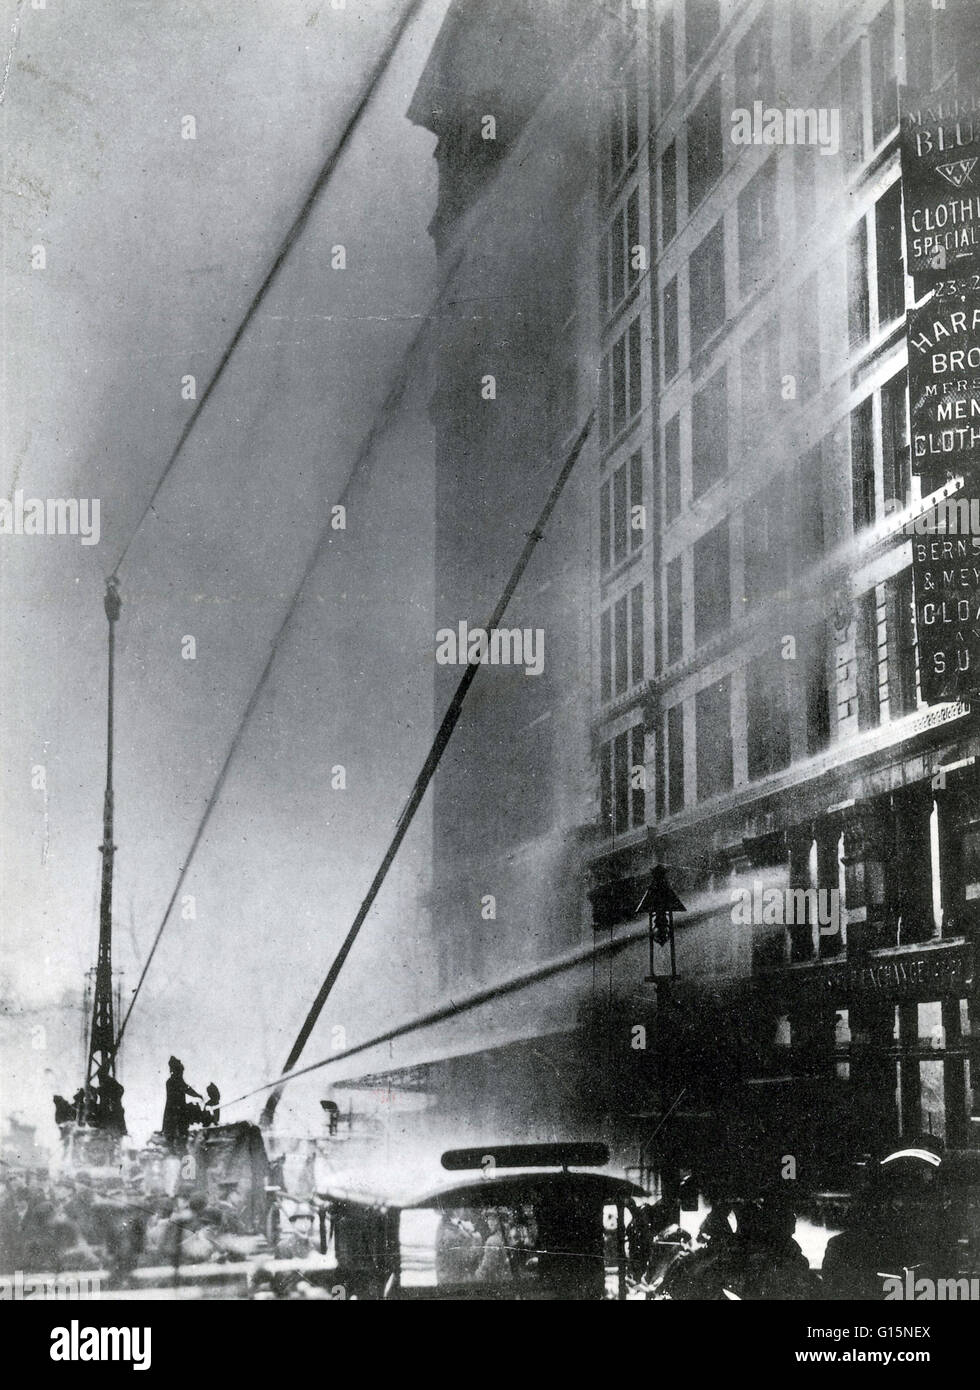 Das Feuer der Triangle Shirtwaist Factory in New York City am 25. März 1911, war der tödlichste industriellen Katastrophe in der Geschichte der Stadt New York. Das Feuer breitete sich durch drei Obergeschosse des Gebäudes. Die meisten Arbeiter auf der 8. Etage und Manager o Stockfoto